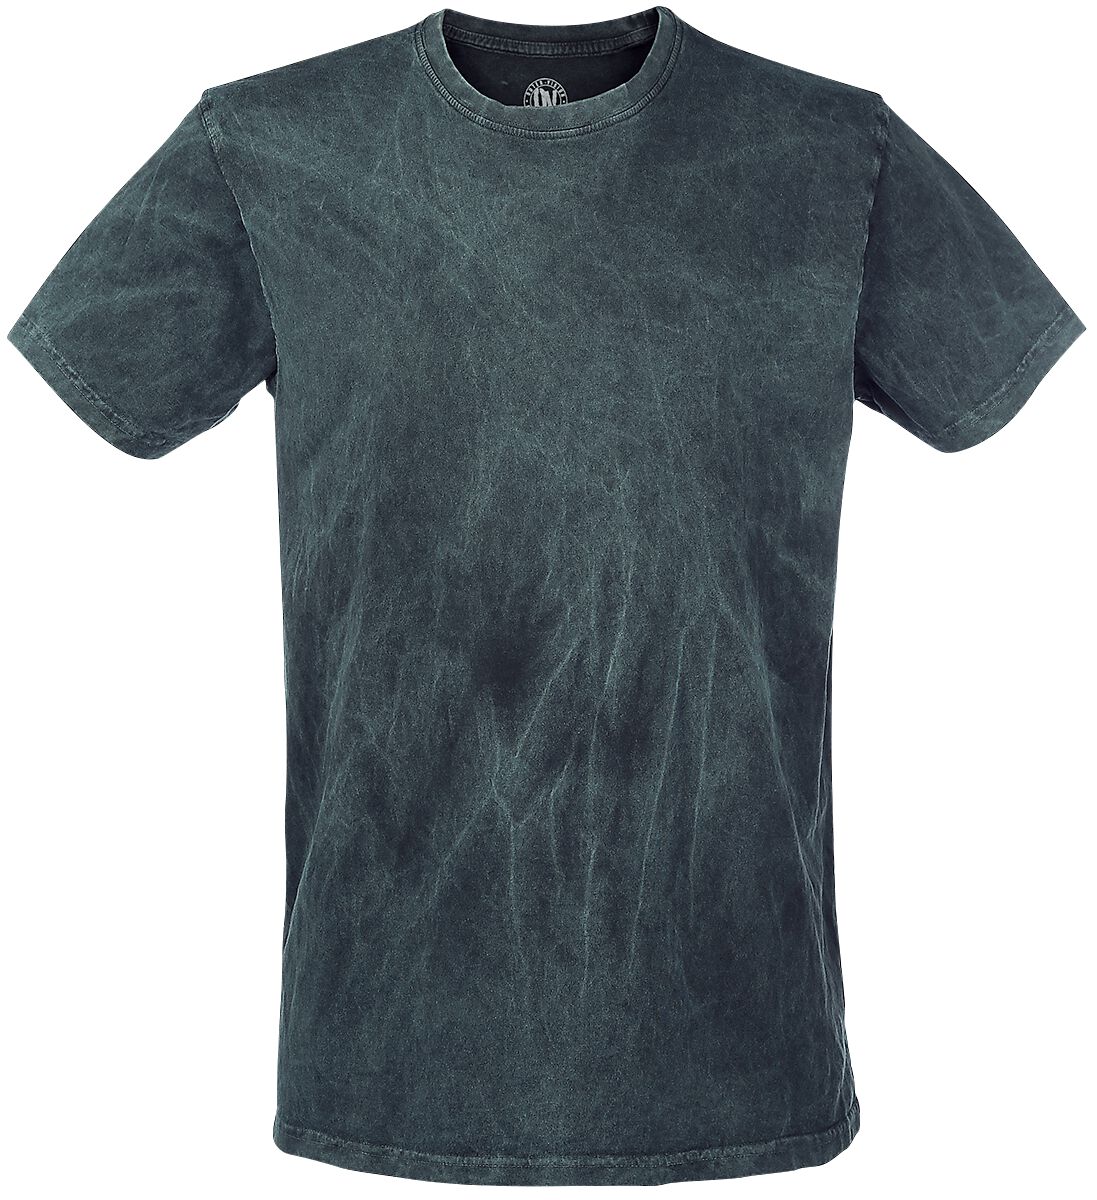 Outer Vision T-Shirt - Vintage - S bis XXL - für Männer - Größe S - petrol